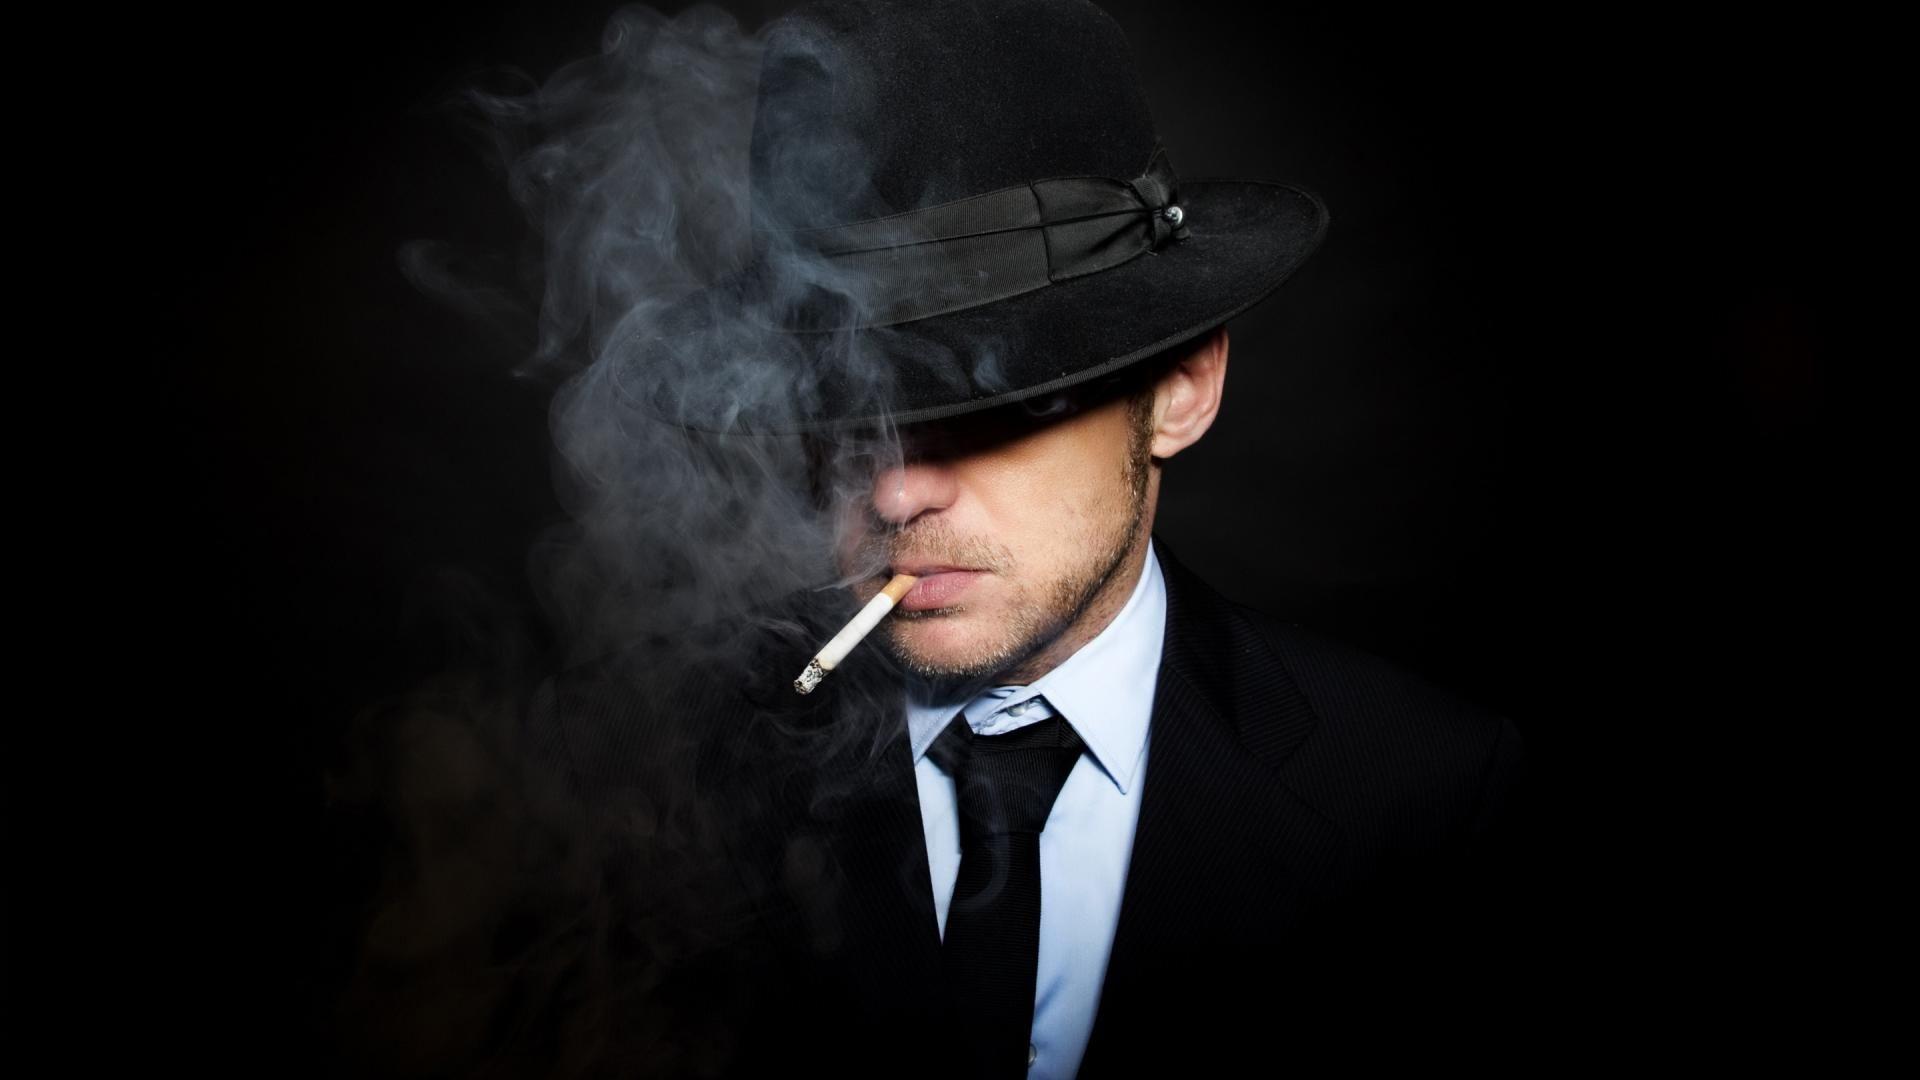 Smoking men hats wallpaper